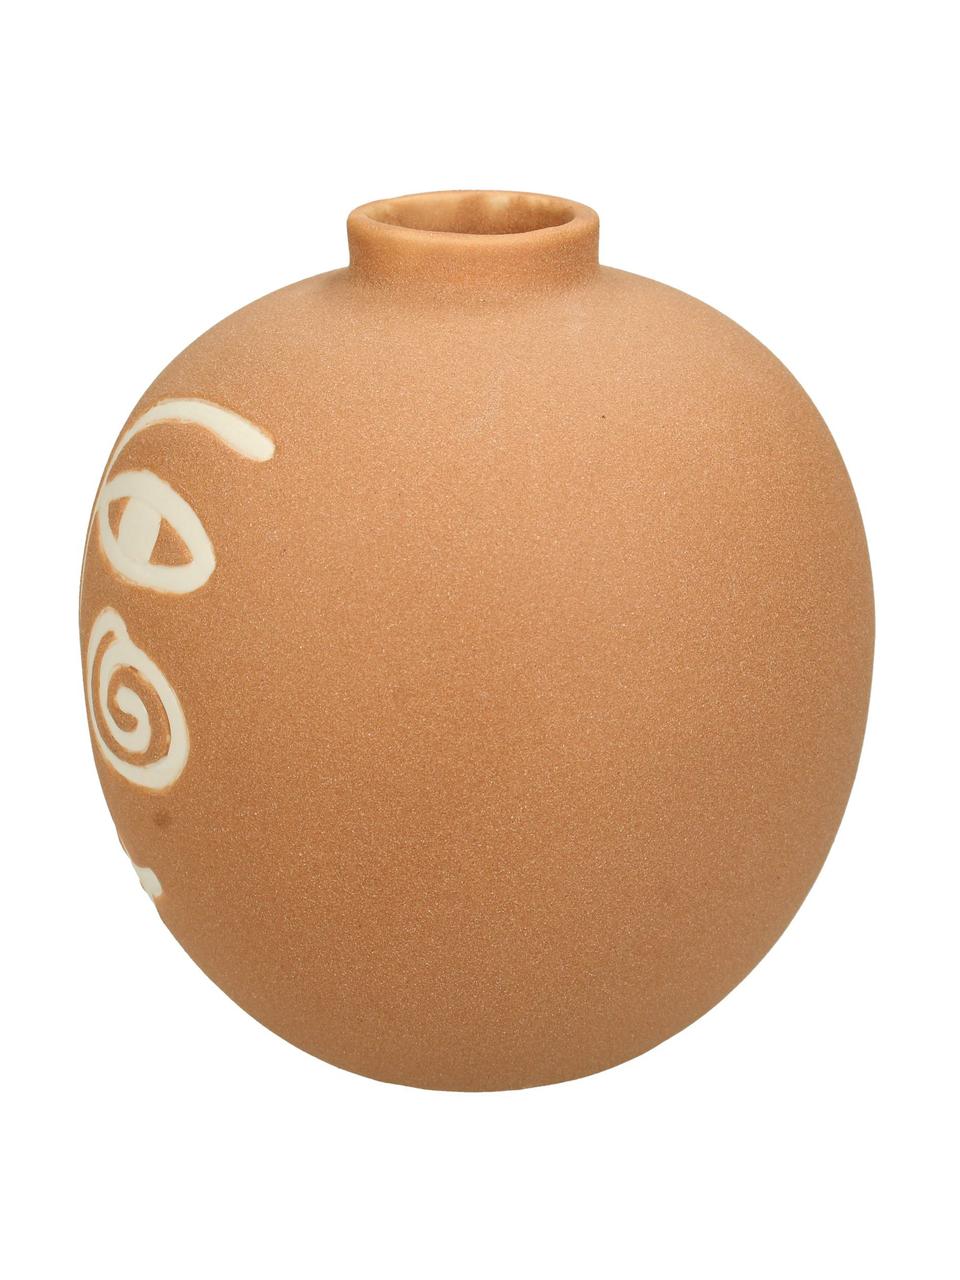 Kameninová váza Blink, Kamenina, Oranžová, bílá, Ø 16 cm, V 16 cm